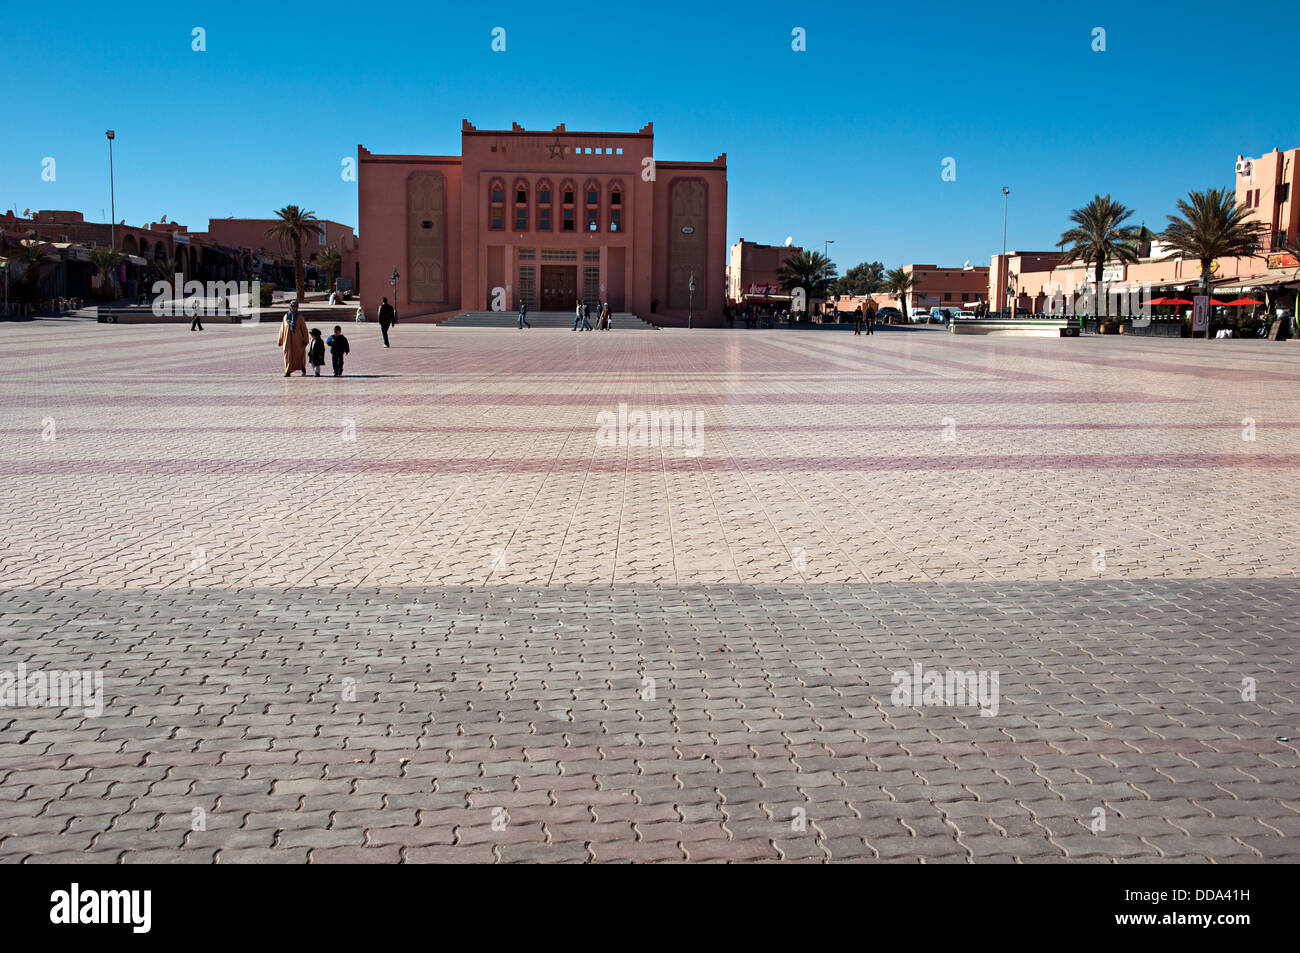 La vie quotidienne en place al Mouahidine, Ouarzazate, Maroc Banque D'Images